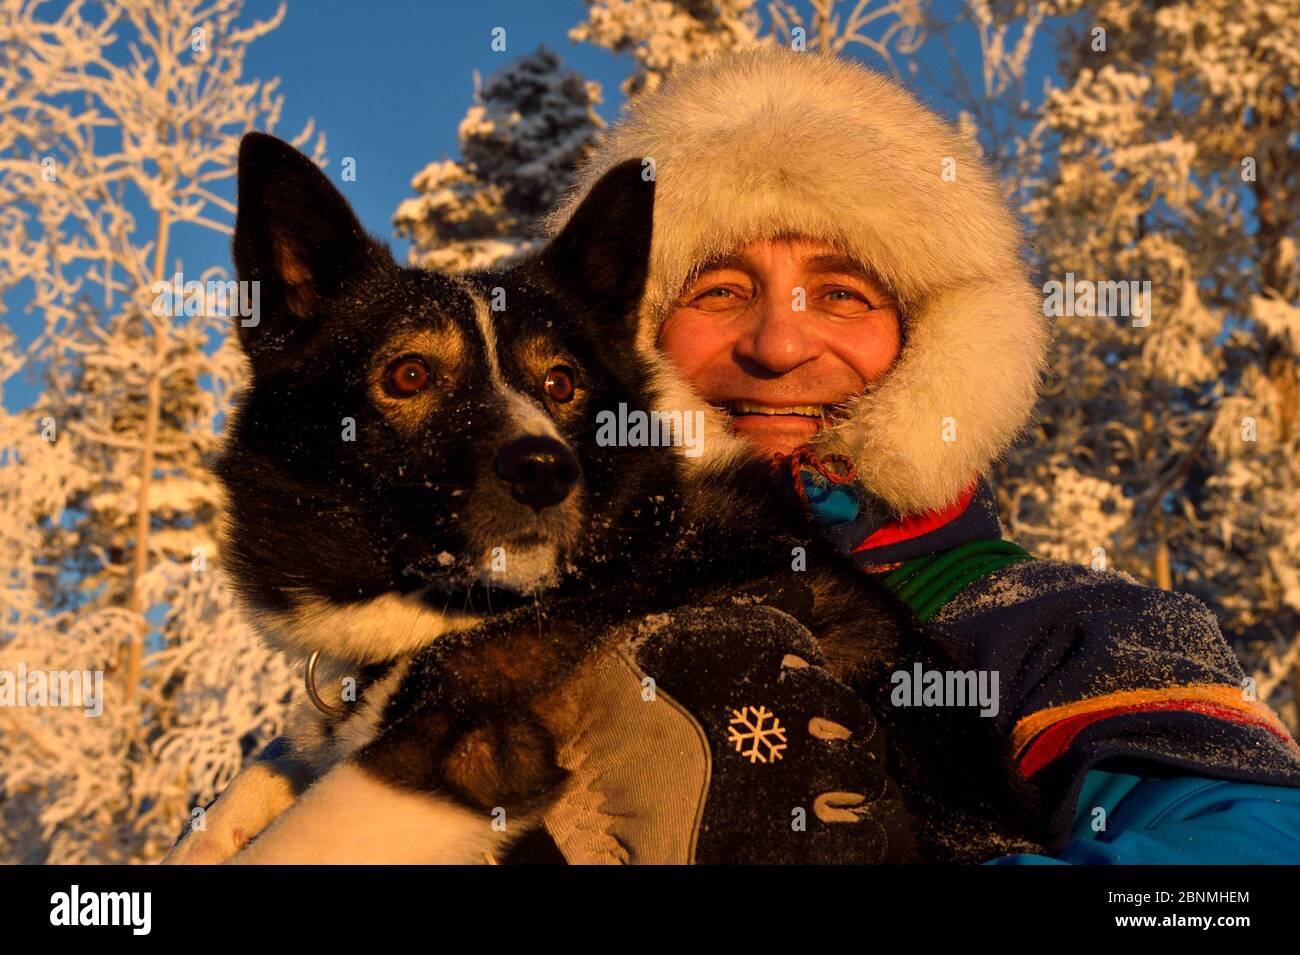 Nils-Torbjörn Nutti, proprietario e operatore di Nutti Sami Siida, con il cane da Husky domestico, durante il viaggio in motoslitta nel deserto, Jukkasjarvi, Lapponia Foto Stock